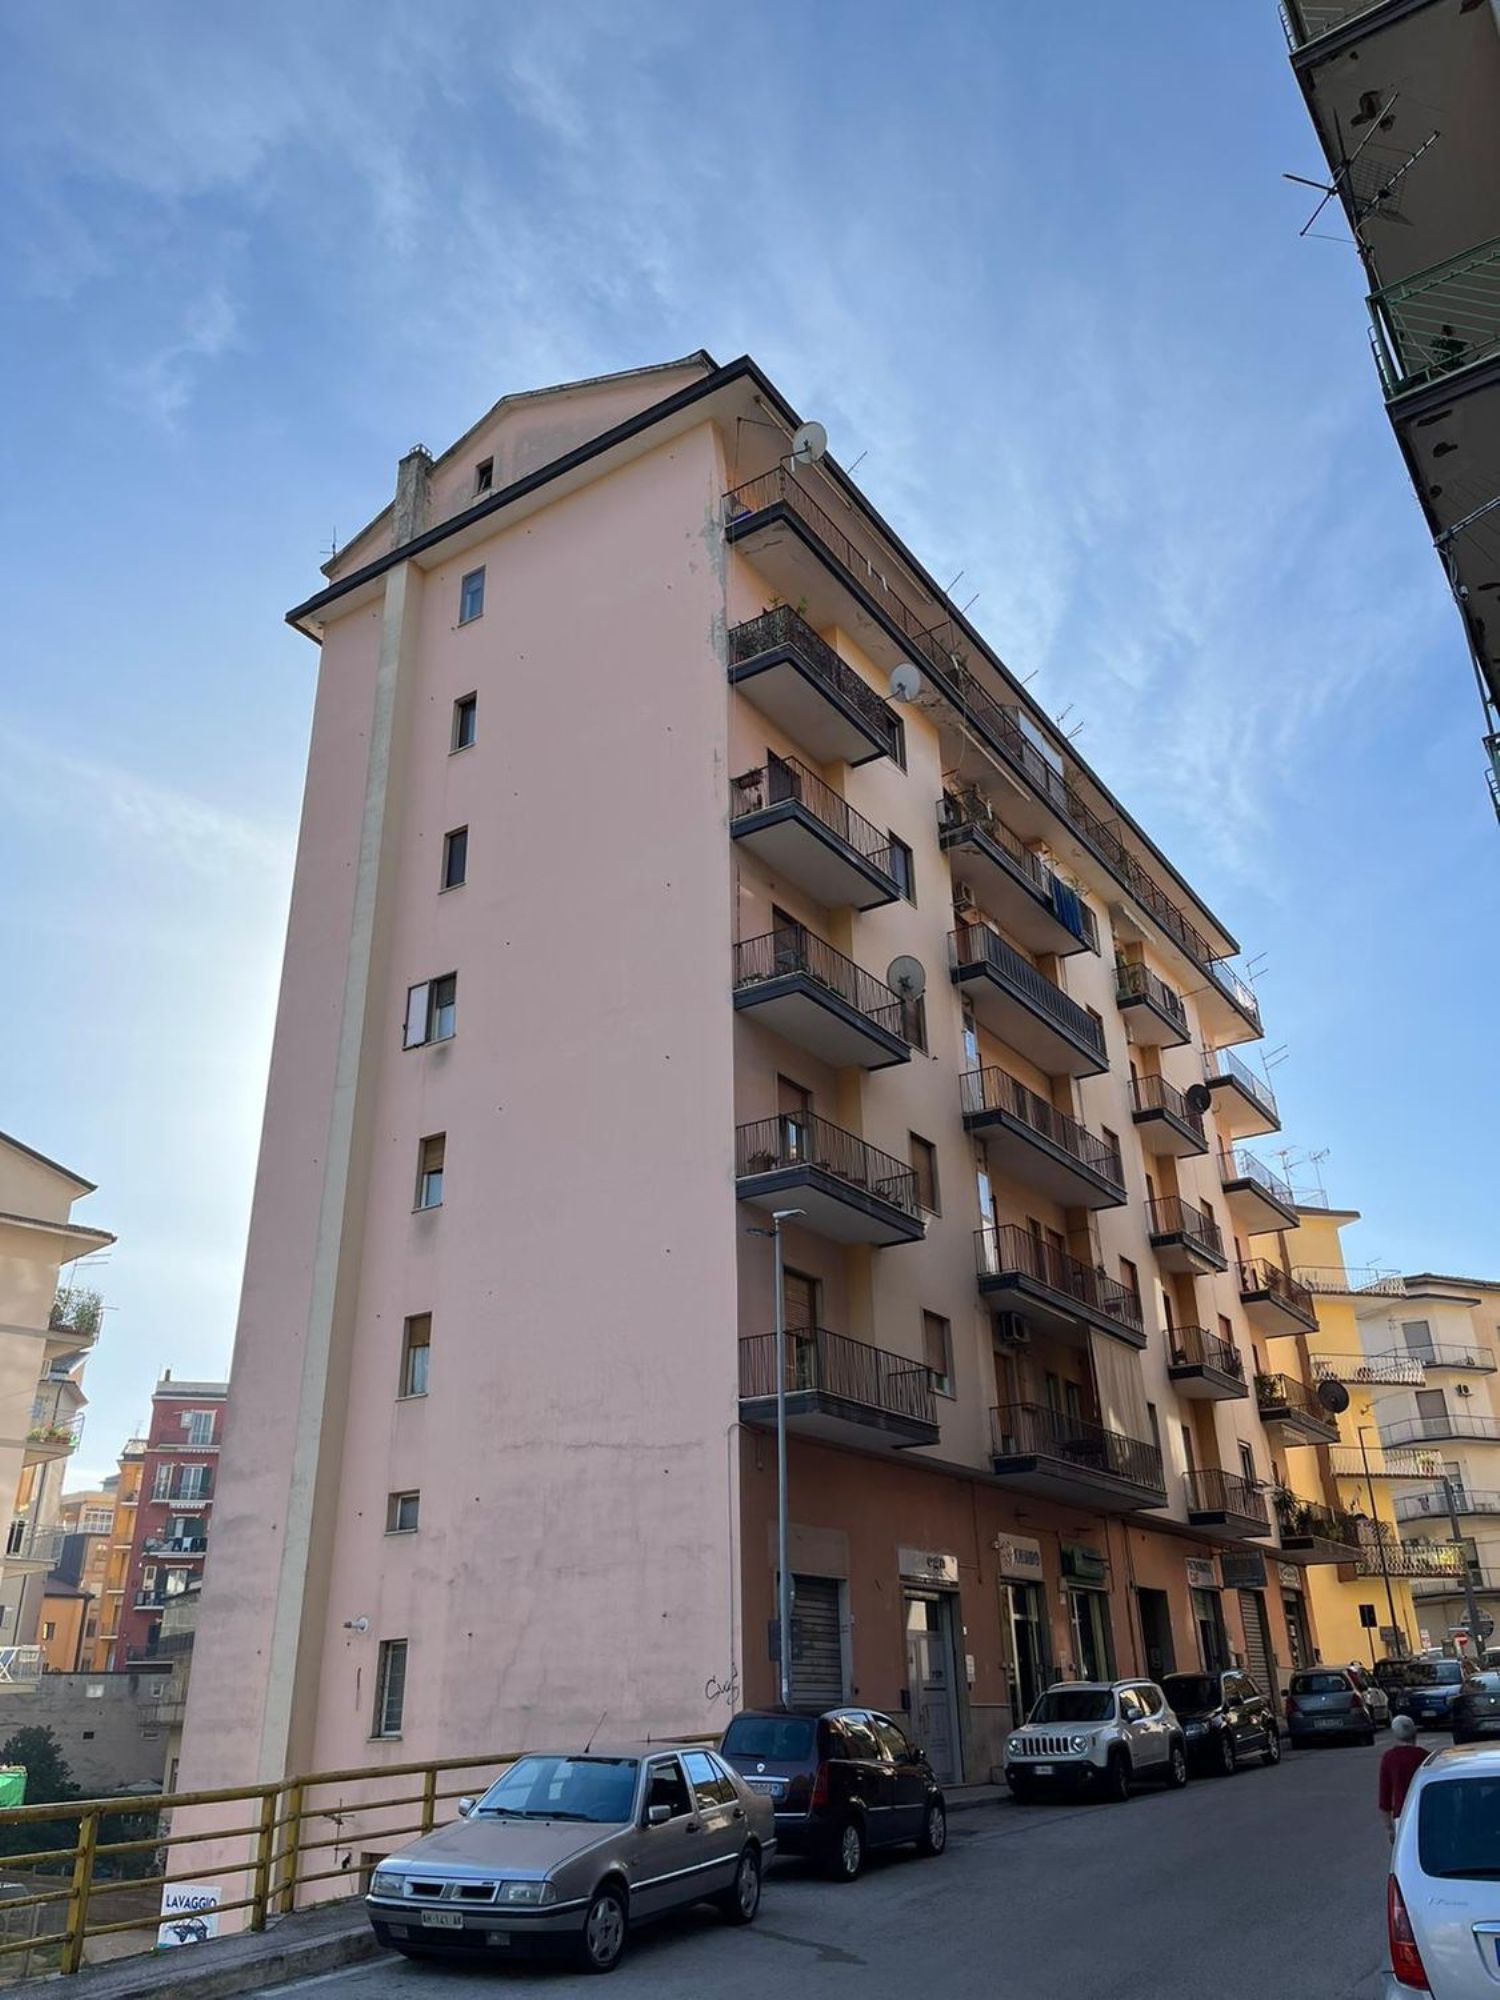 Appartamento in vendita a Avellino, 5 locali, prezzo € 140.000 | PortaleAgenzieImmobiliari.it